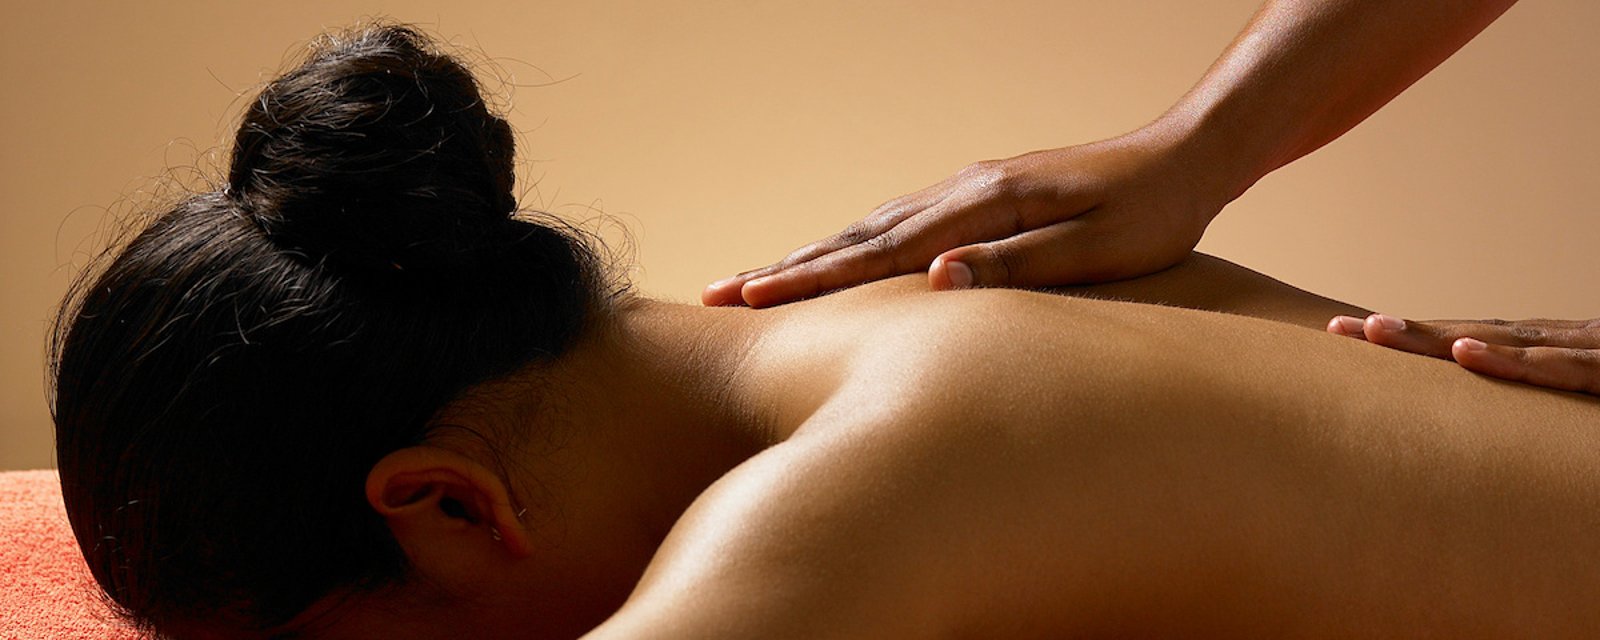 La science dit que les mamans ont besoin de massages